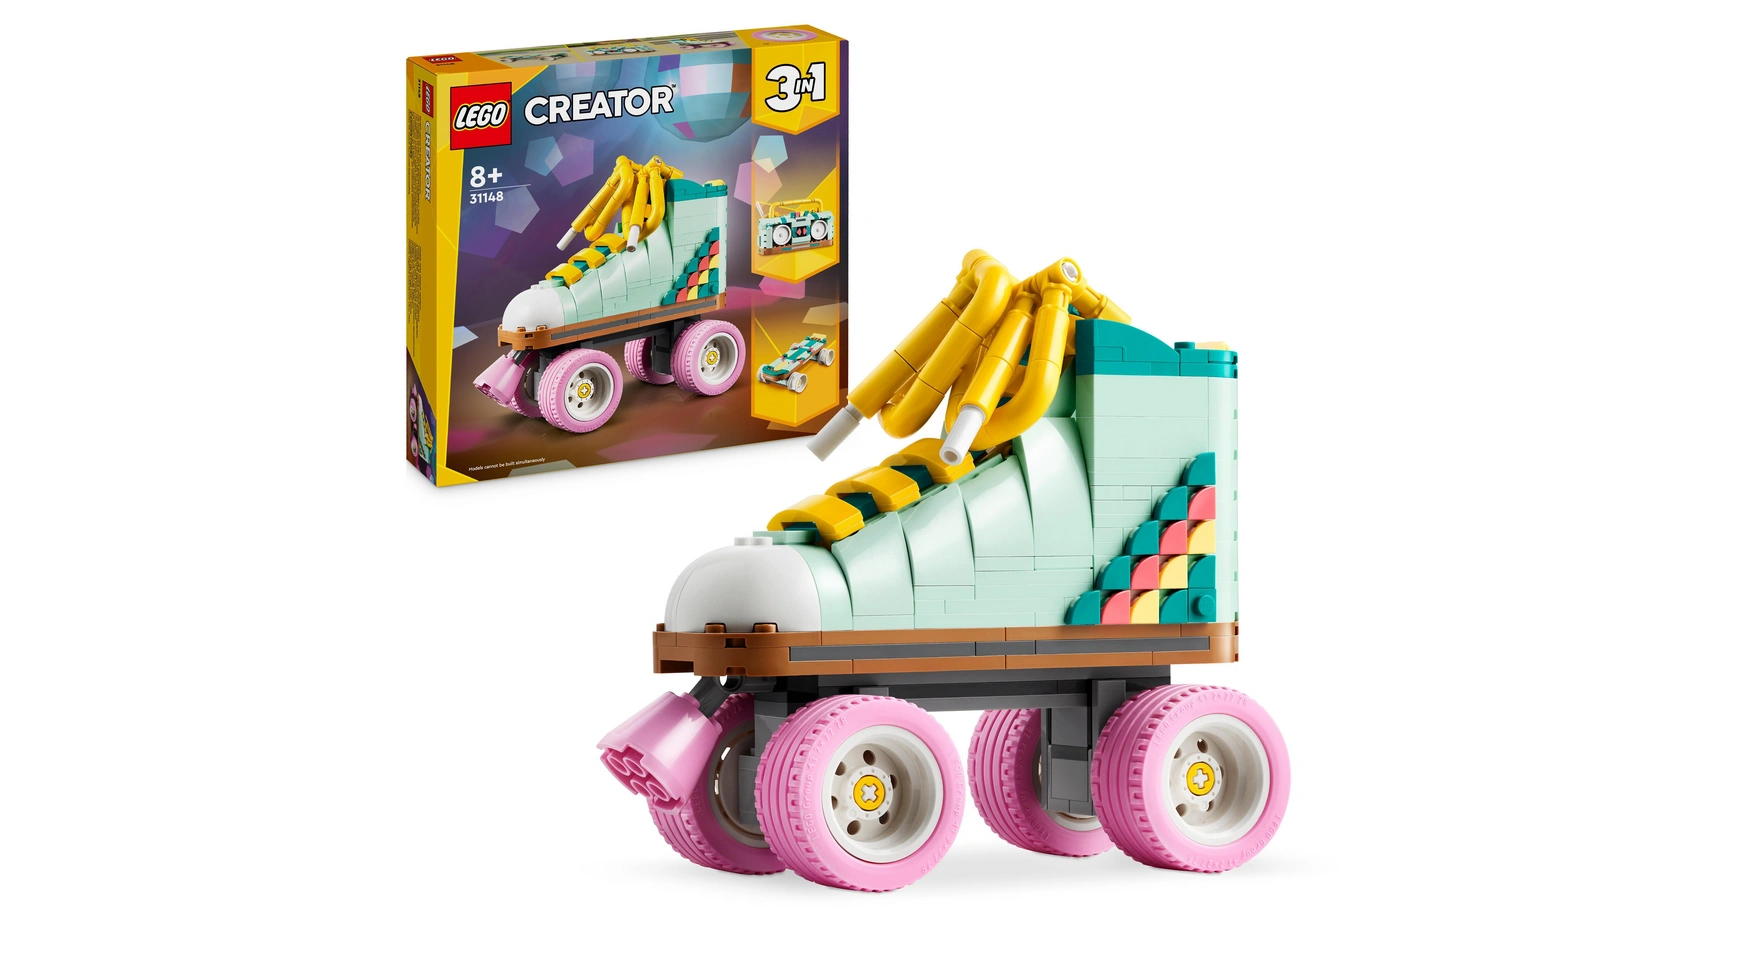 Lego Creator 3in1 Игрушка на роликах, мини-скейтборд или бумбокс набор с роликовыми коньками alpha caprice floret white pink violet